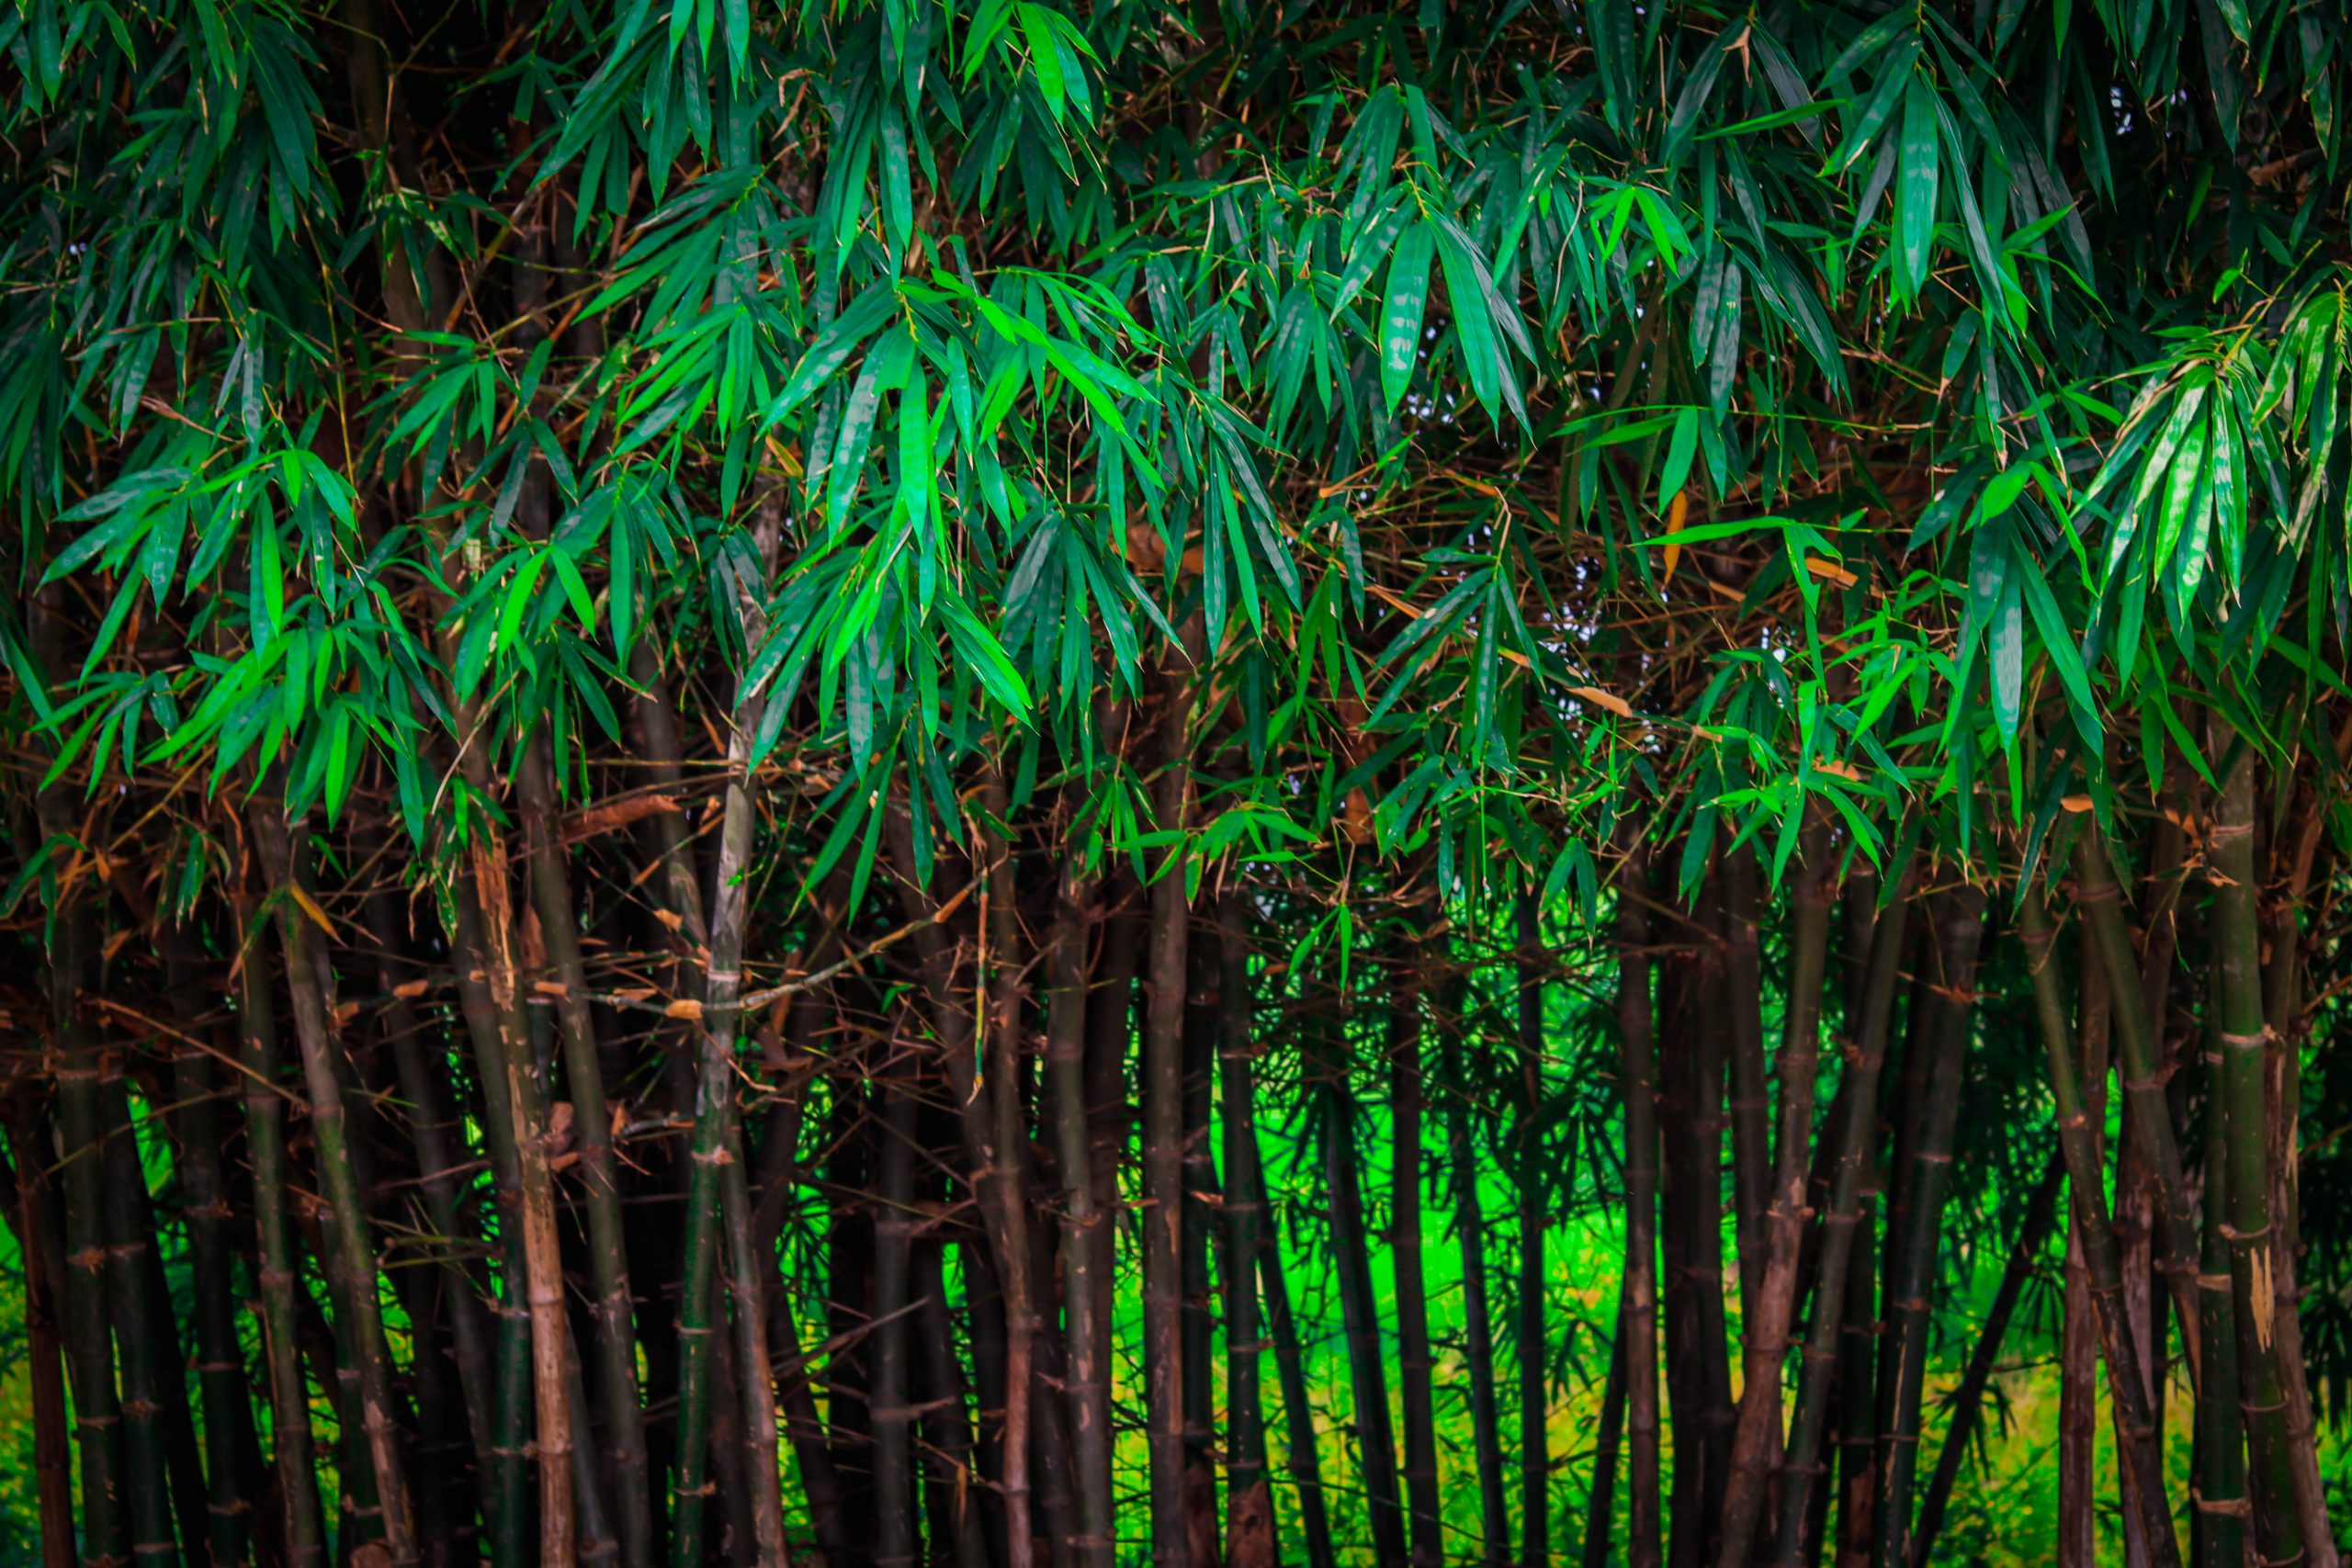 Bamboo weeds